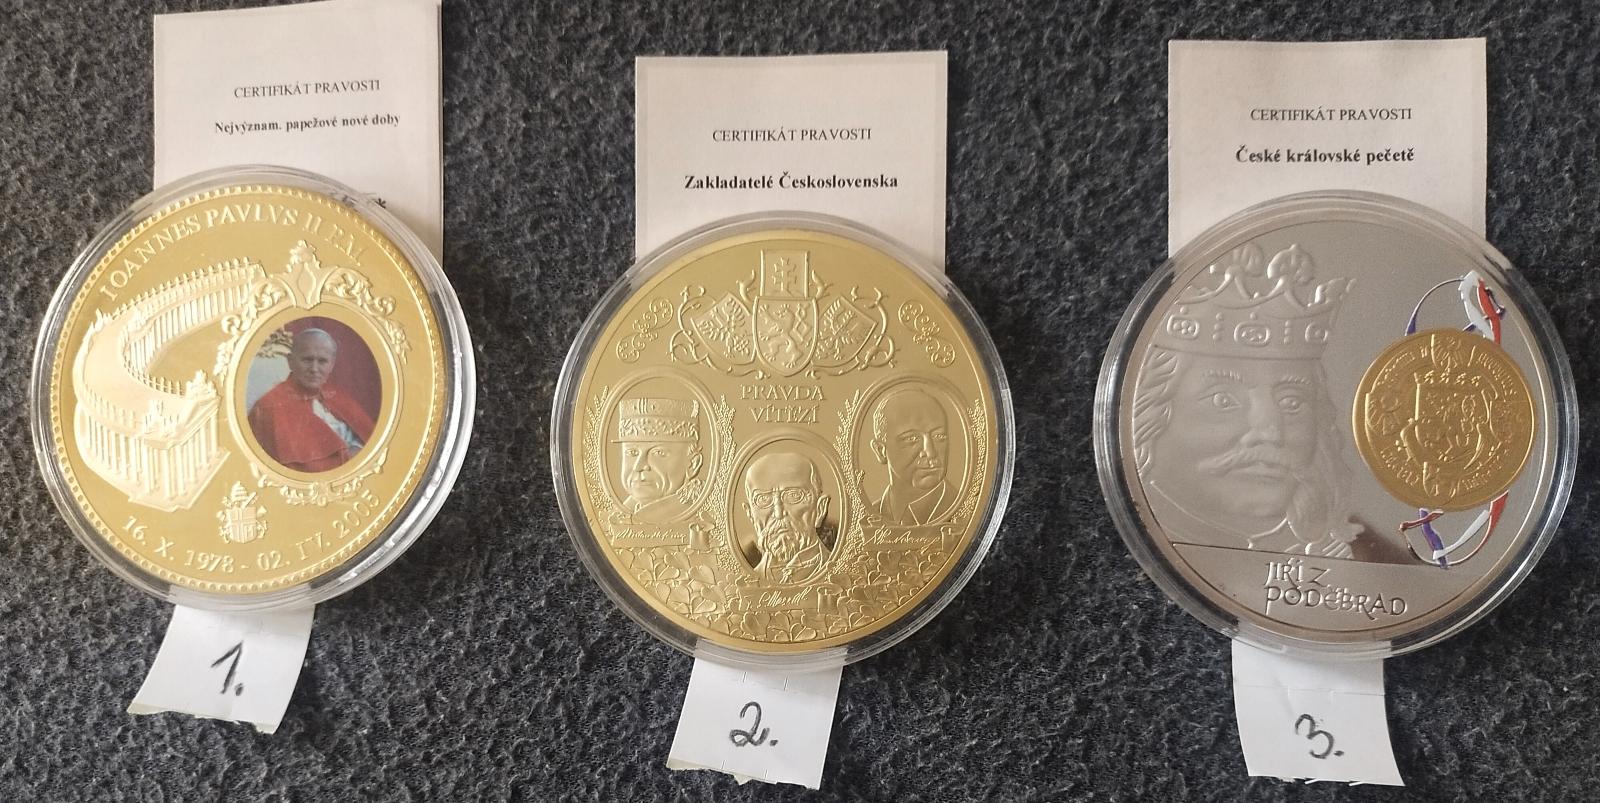 1ks veľké medaily (110g) - mincový obchod - Numizmatika